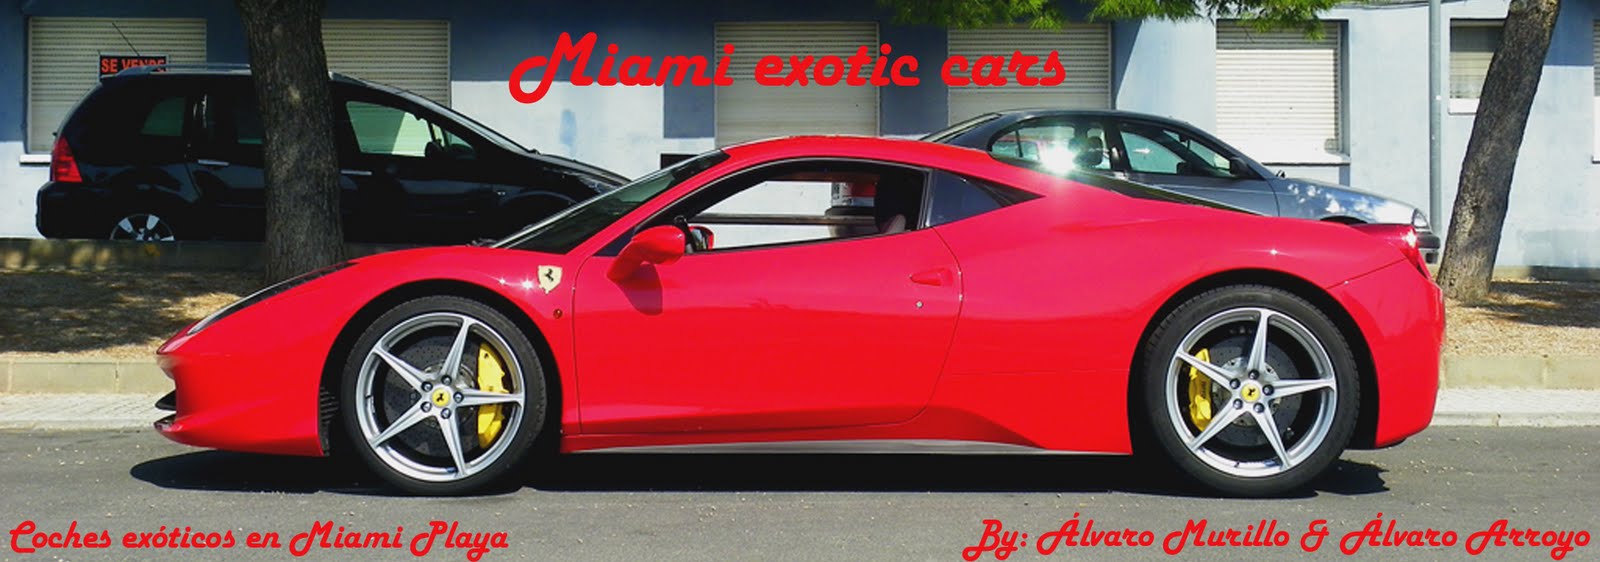 Miami Exotic Cars